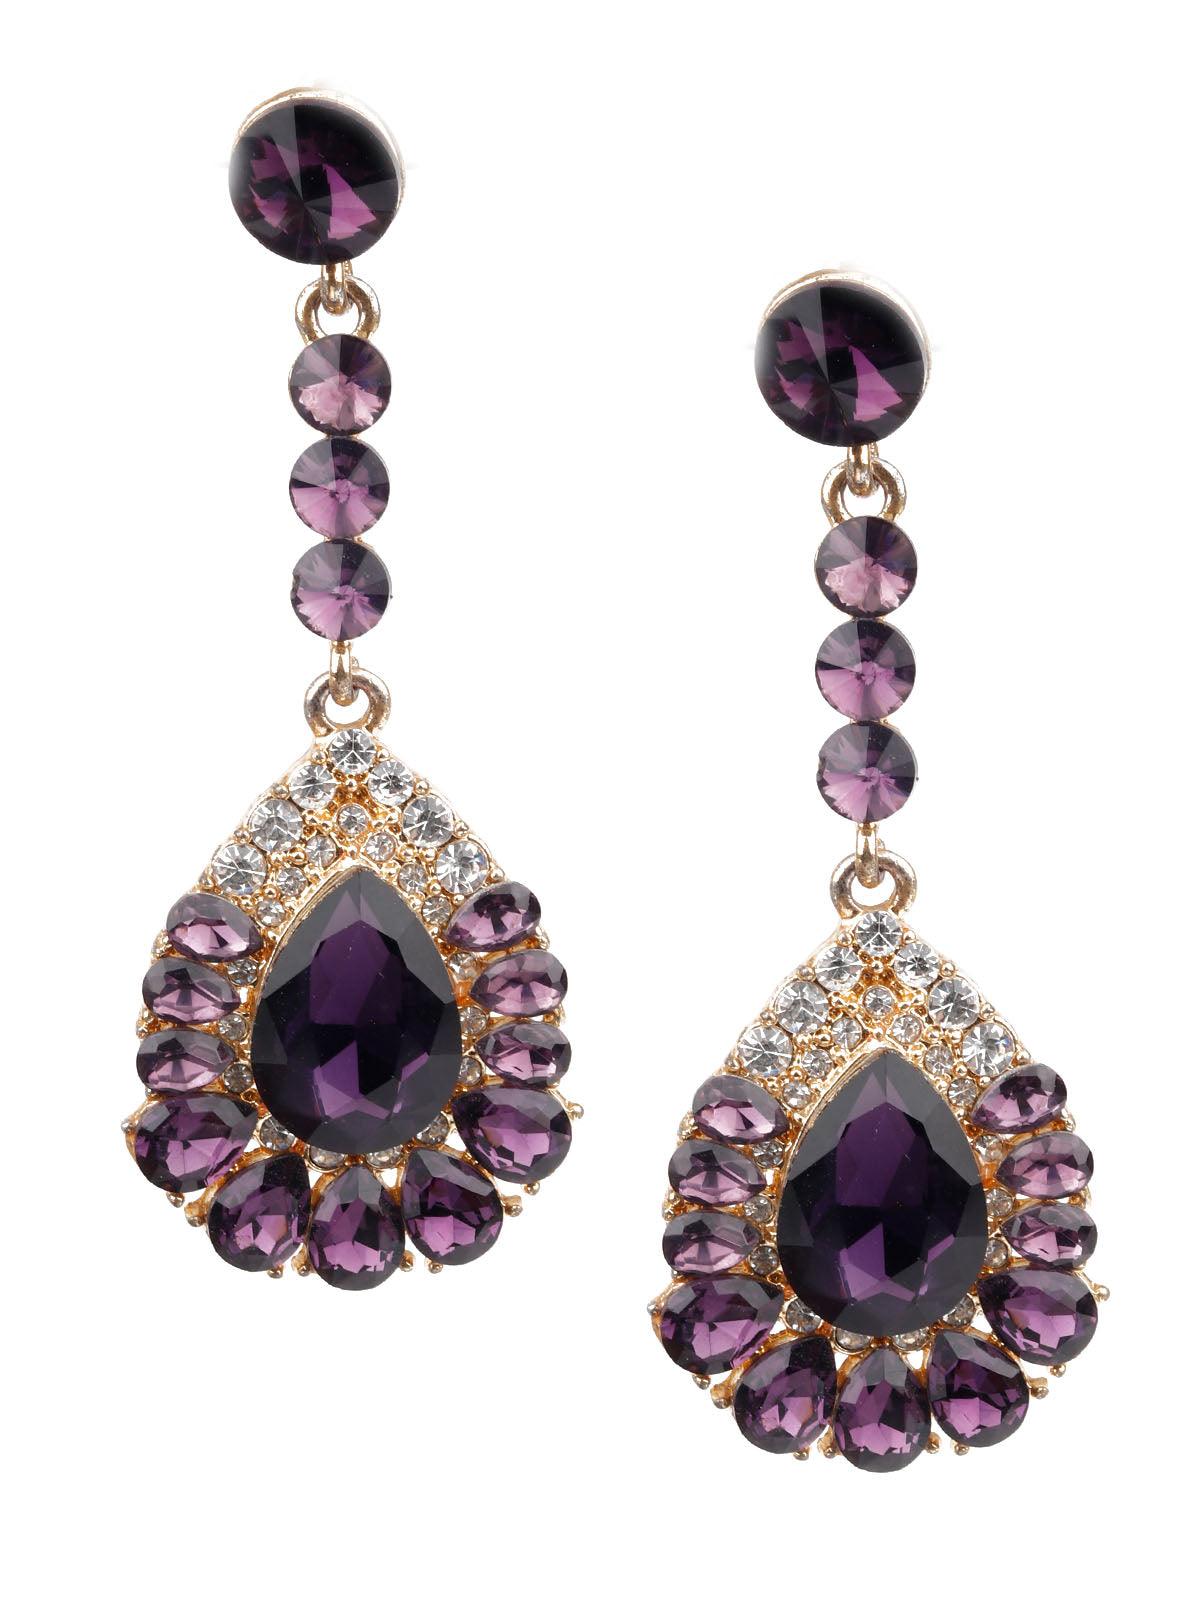 Women's Classy Gold And Purple Teardrop Earrings - Odette